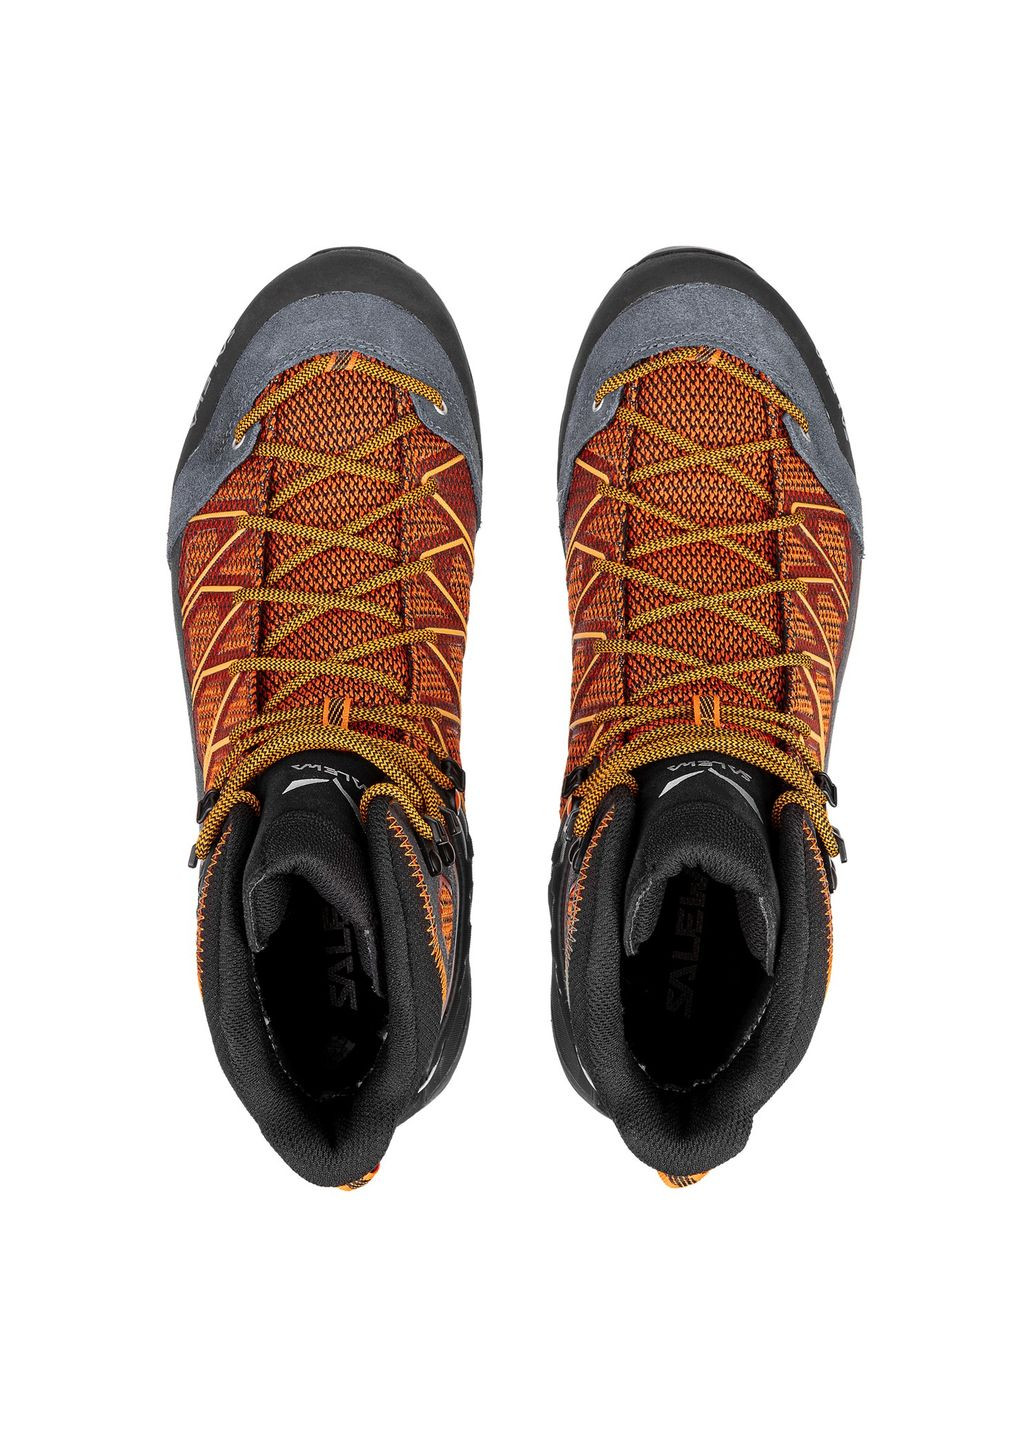 Цветные осенние ботинки ms mtn trainer lite mid gtx серый-оранжевый Salewa